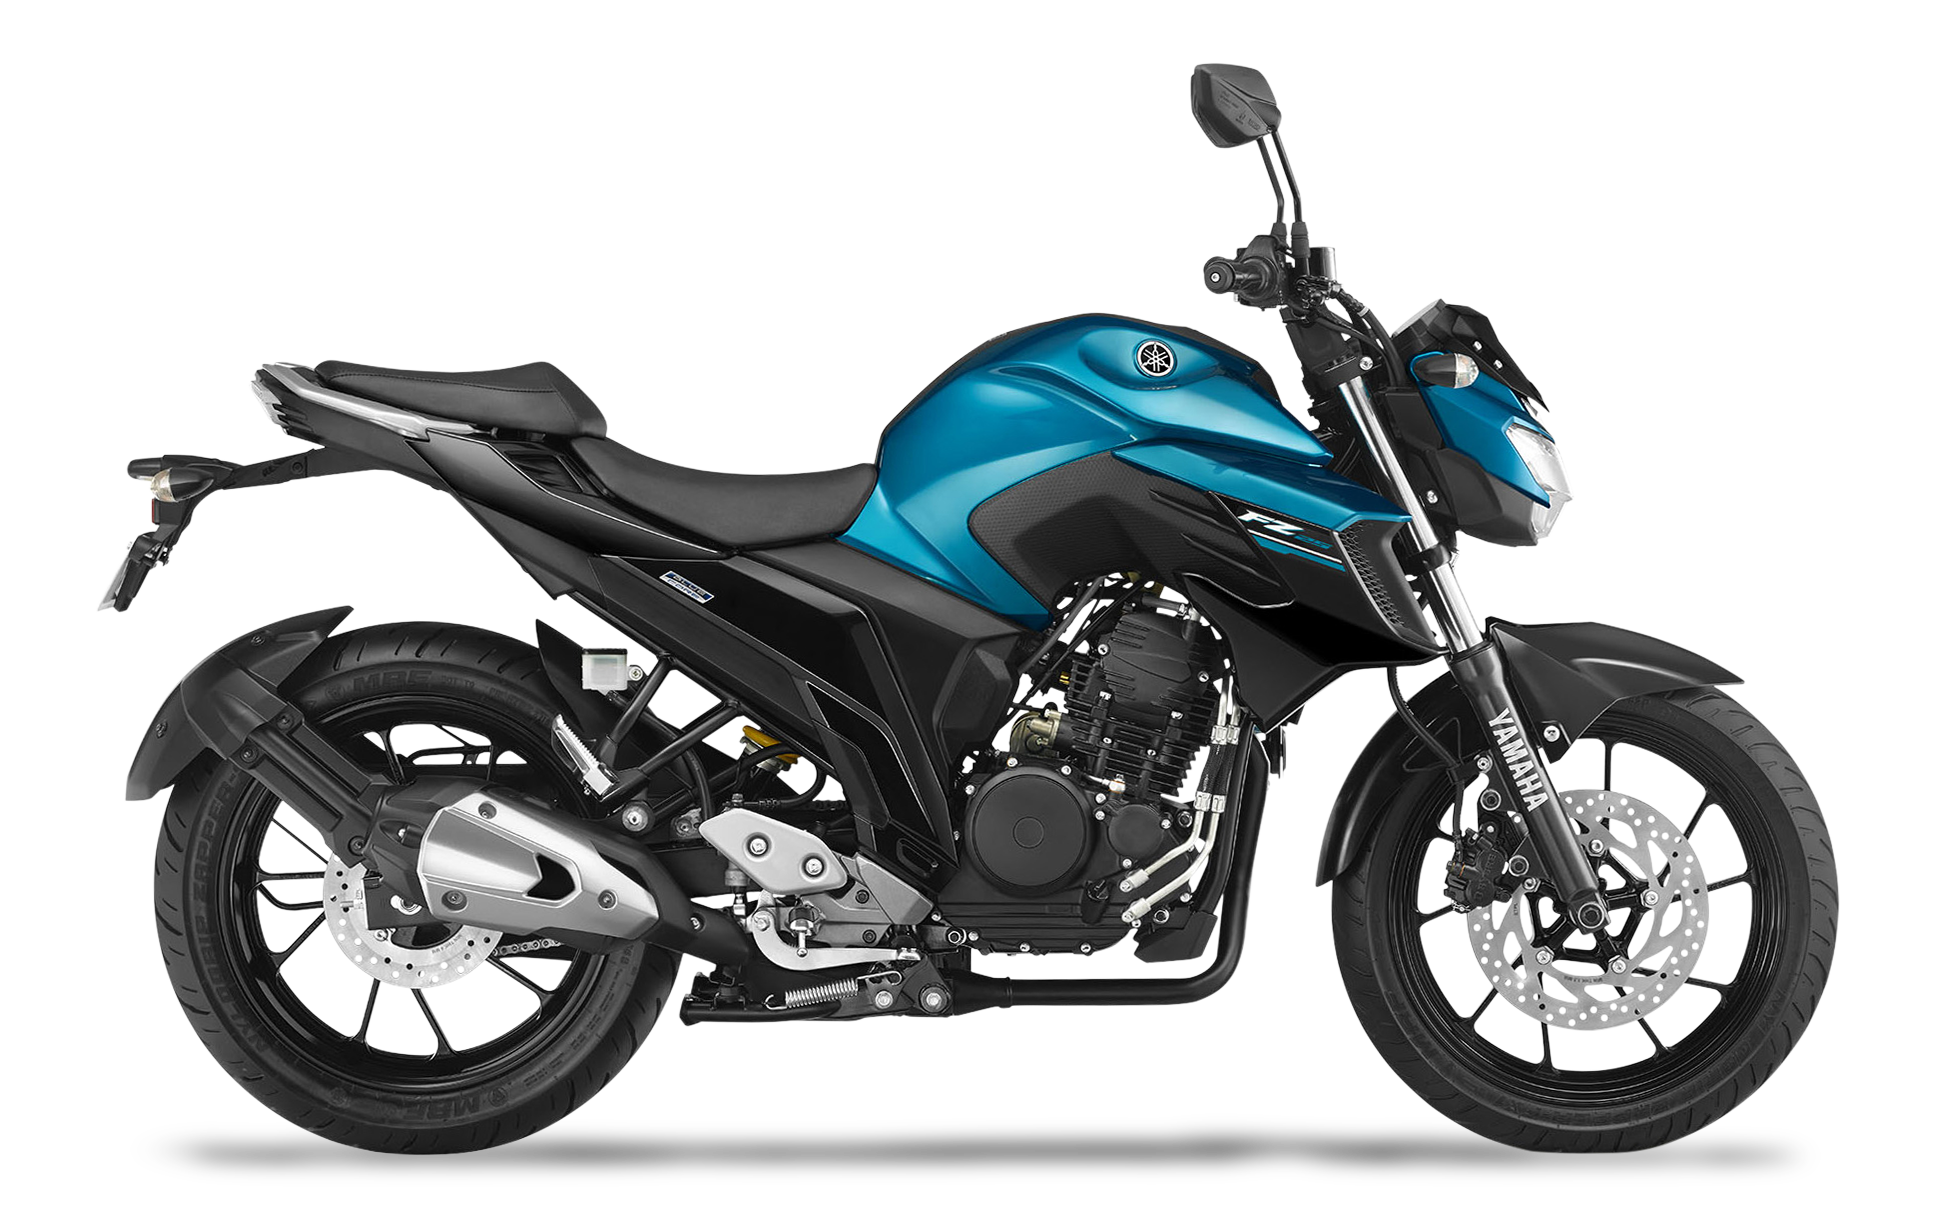  Motos  Yamaha  Per  Cat logo y Precios Somos Moto  Per 